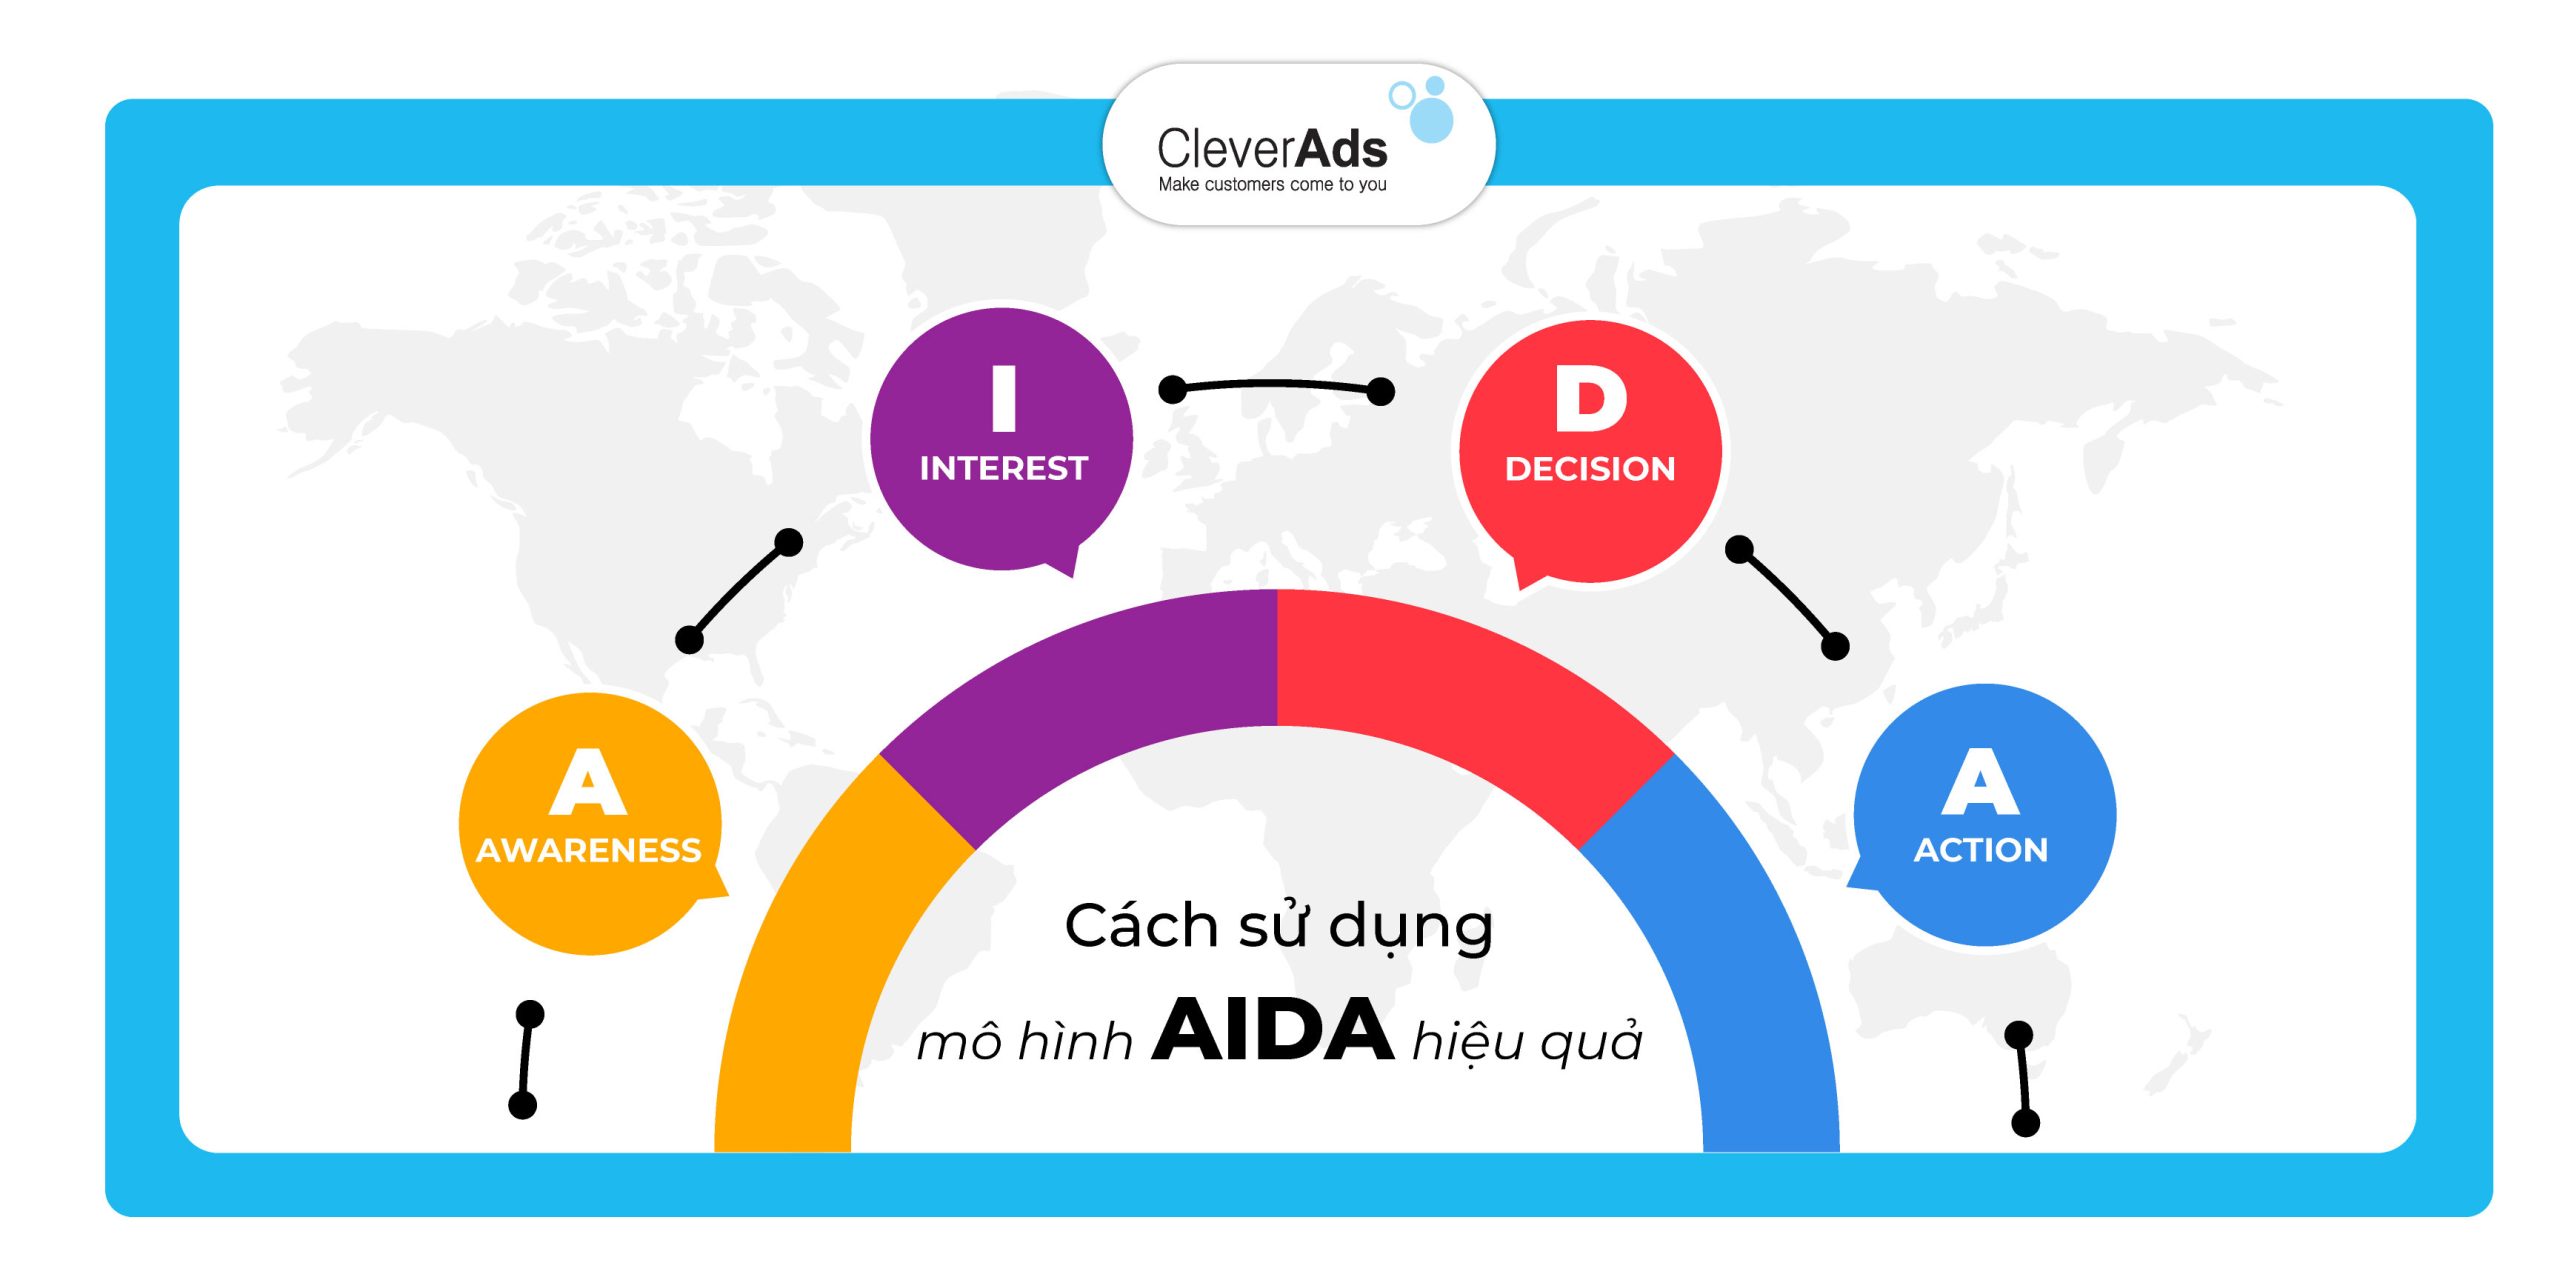 Cách sử dụng mô hình AIDA hiệu quả